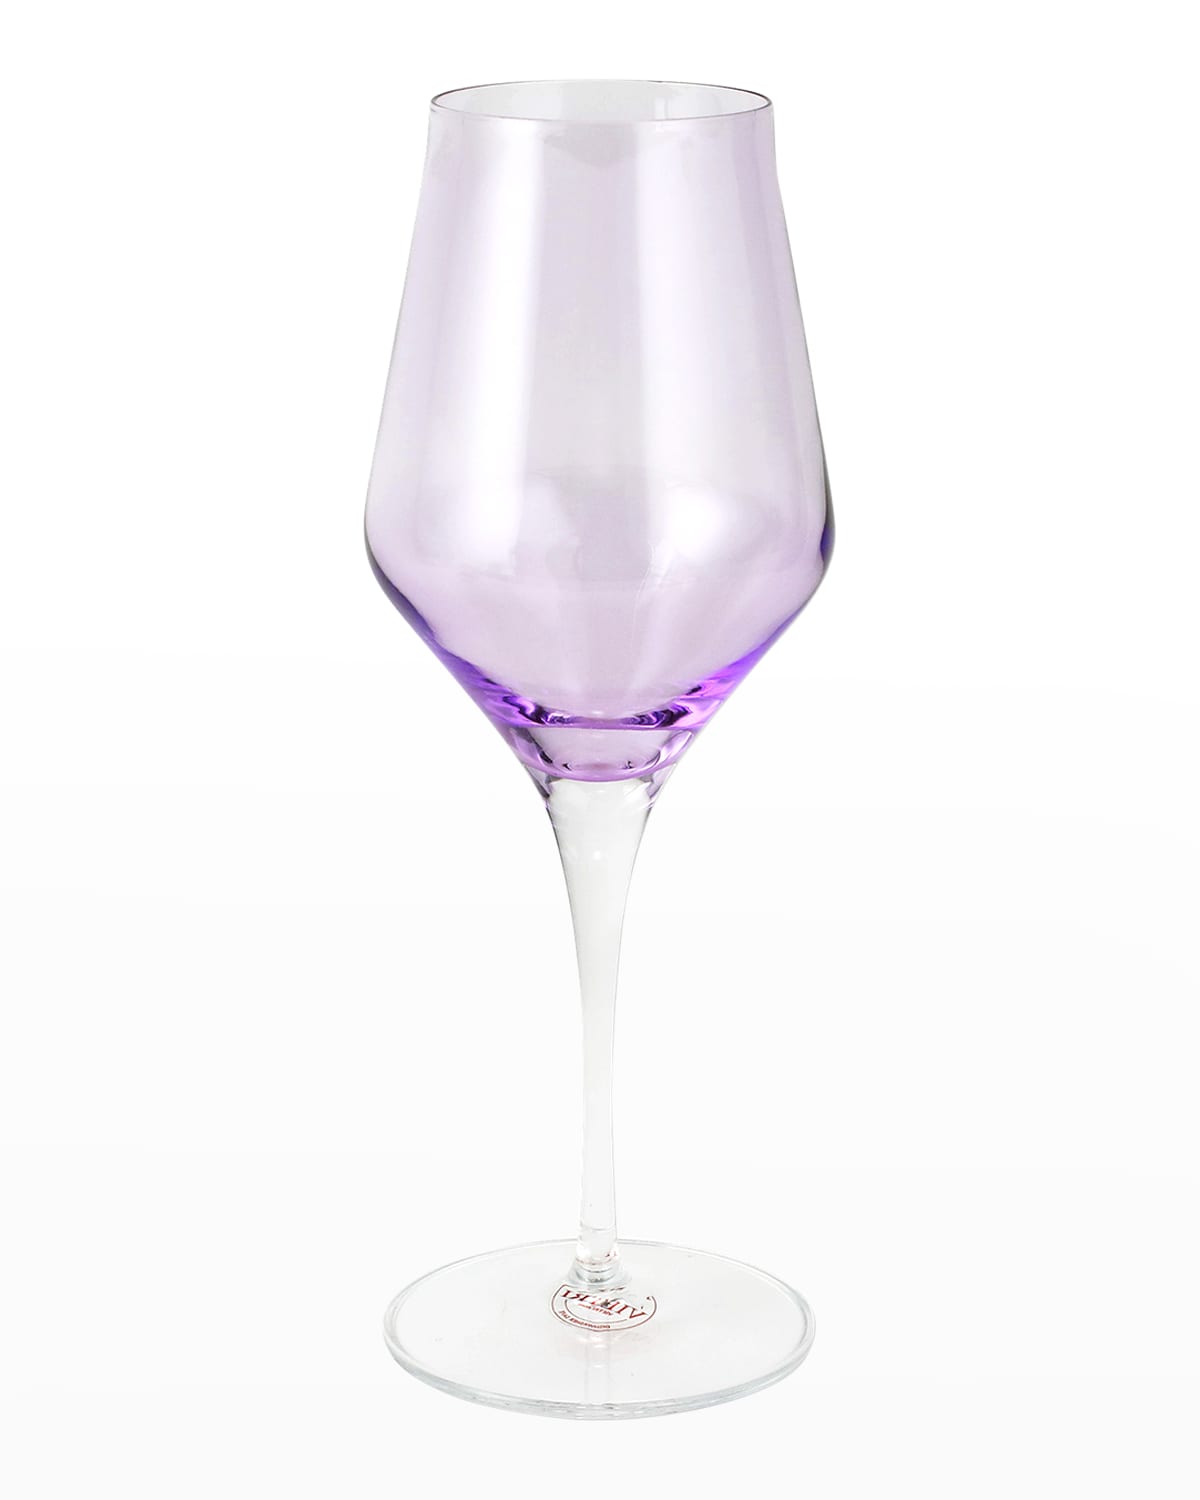 Vietri Contessa Water Glass In Purple